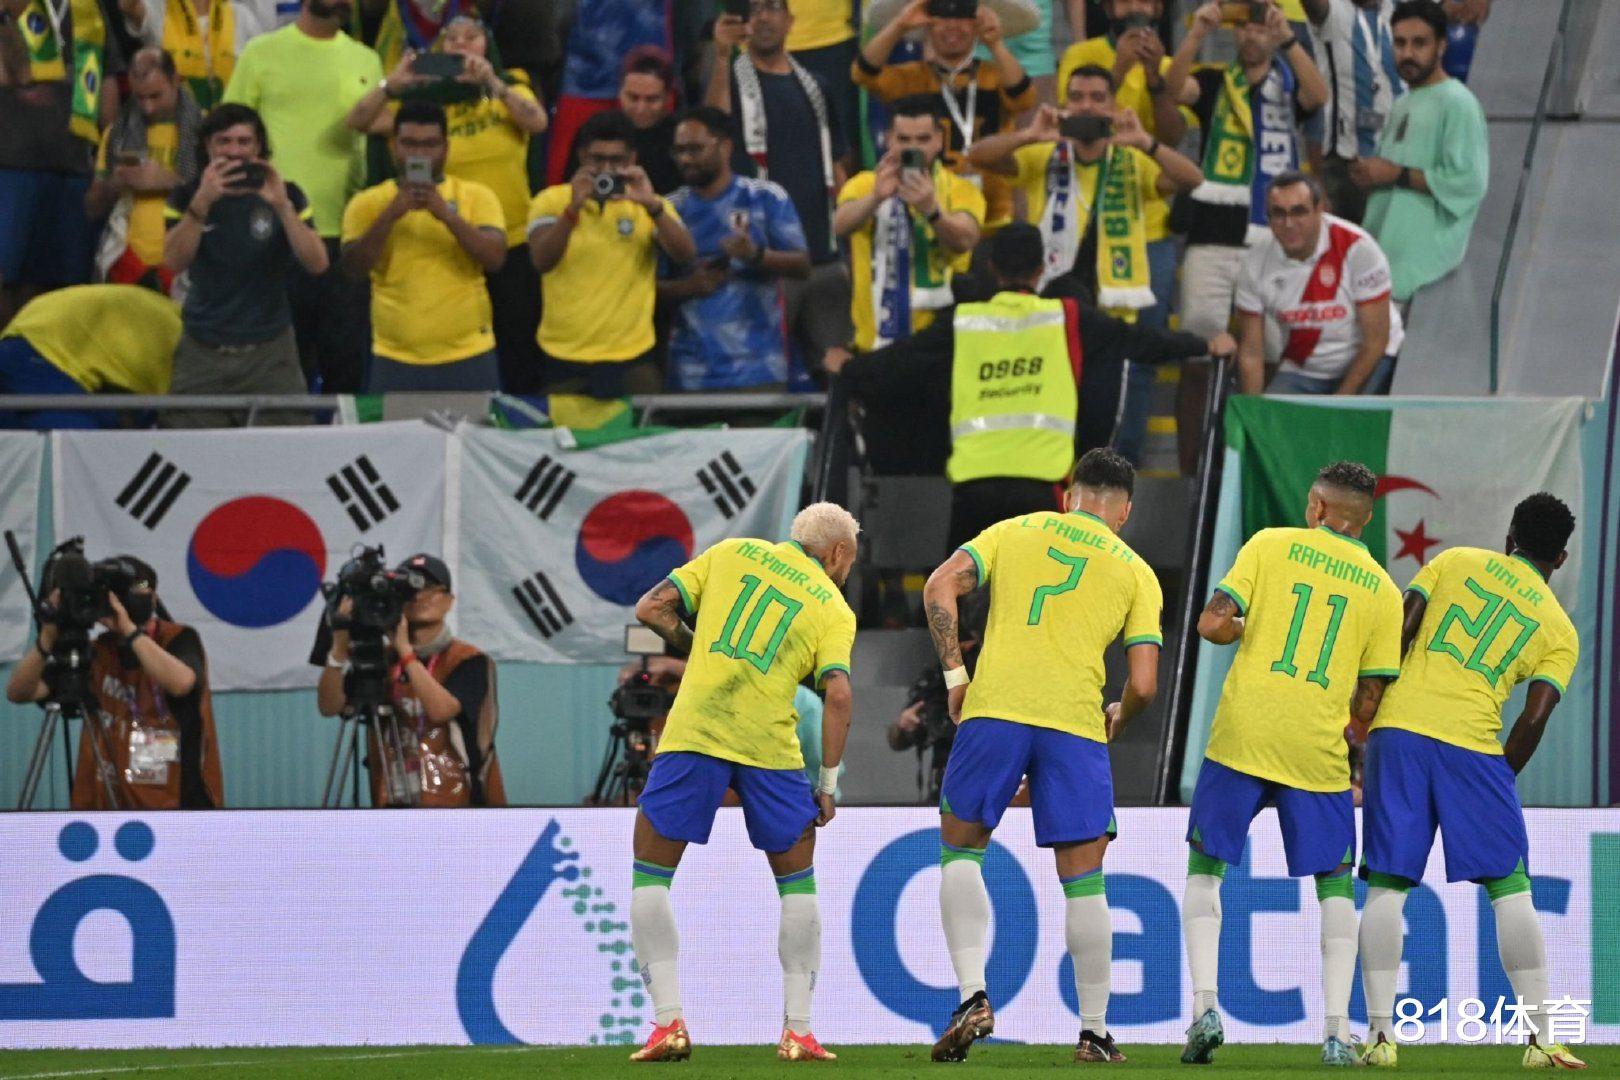 自取其辱! 韩国大叔赛前嘲讽巴西队: 记住米内罗惨败! 韩国7-1巴西(3)